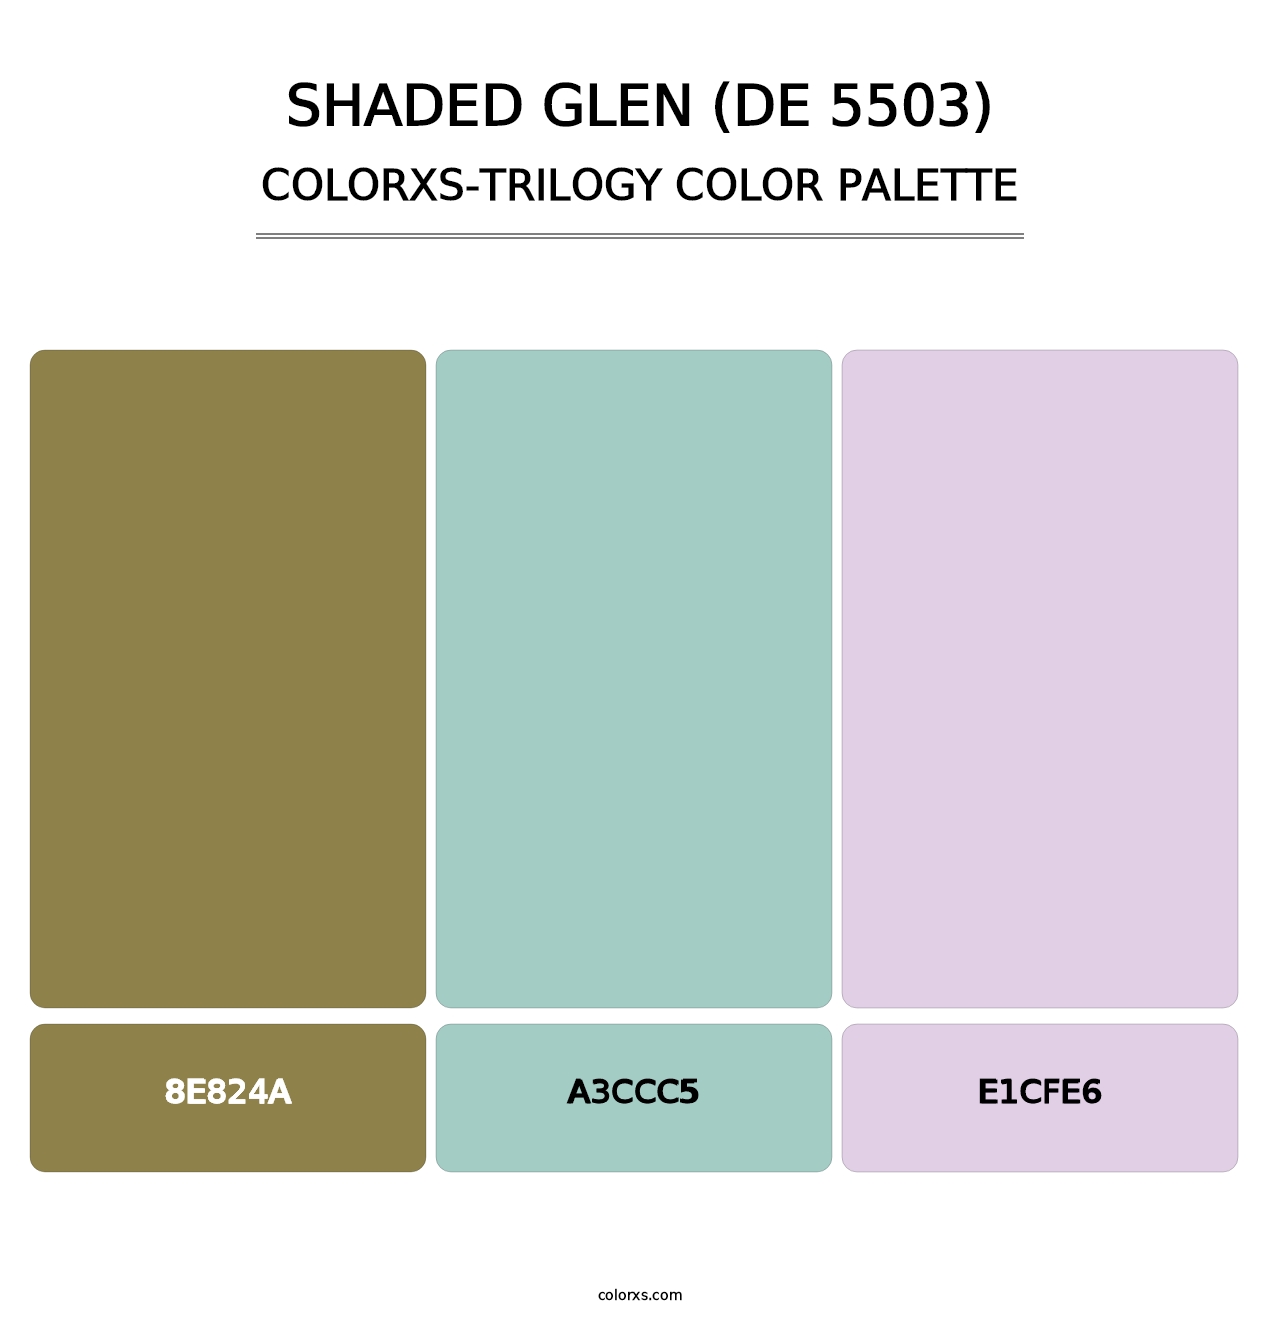 Shaded Glen (DE 5503) - Colorxs Trilogy Palette